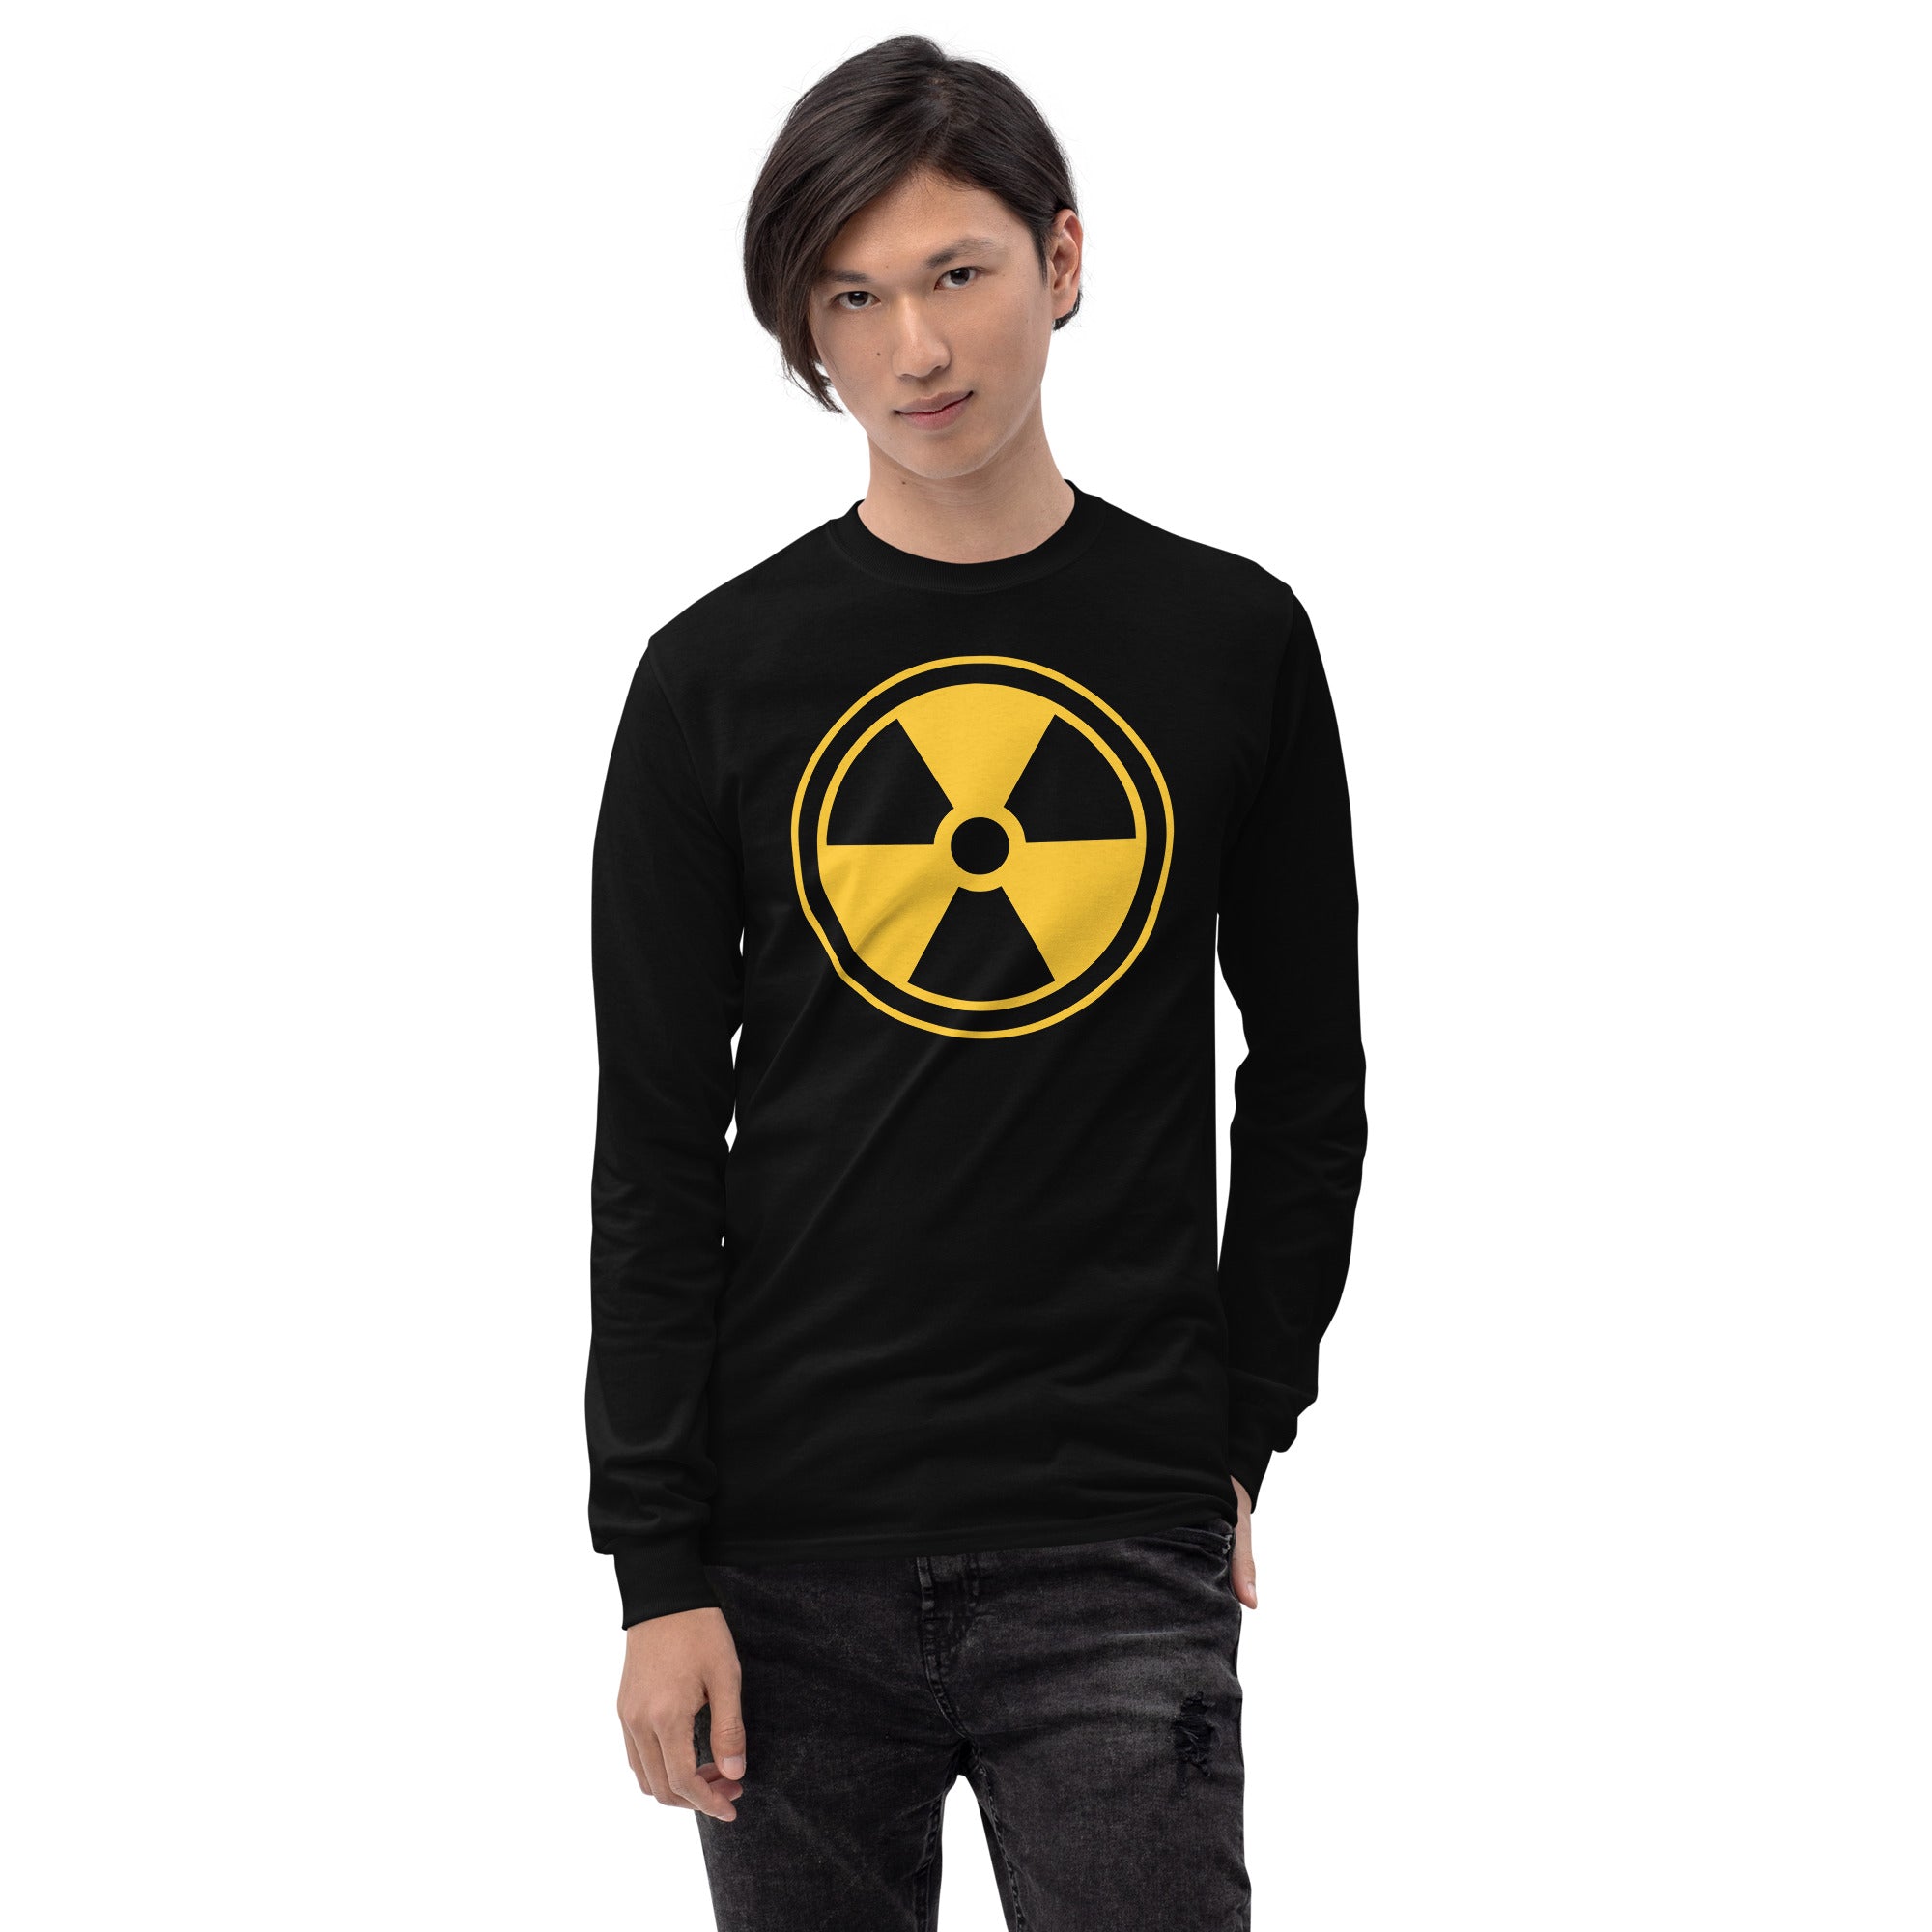 Yellow Radioactive Radiation Warning Sign Long Sleeve Shirt